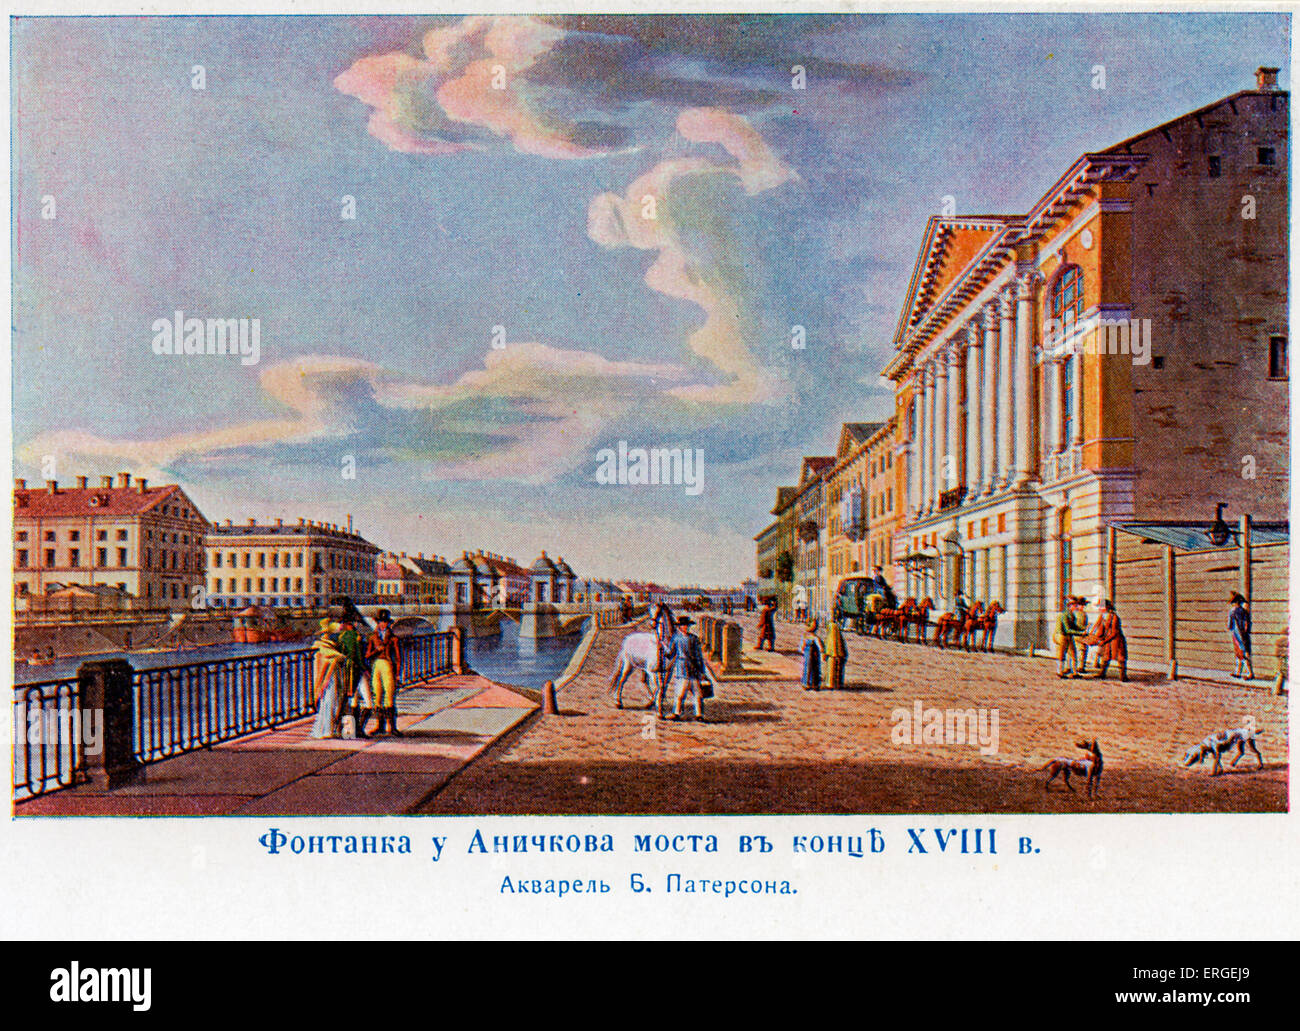 Naryshkine Haus in der Nähe von Anichkov Brücke, St. Petersburg. Russland. Vom 18. Jahrhundert Aquarell von B. Paterson. Fluss Fontanka. Lev Stockfoto